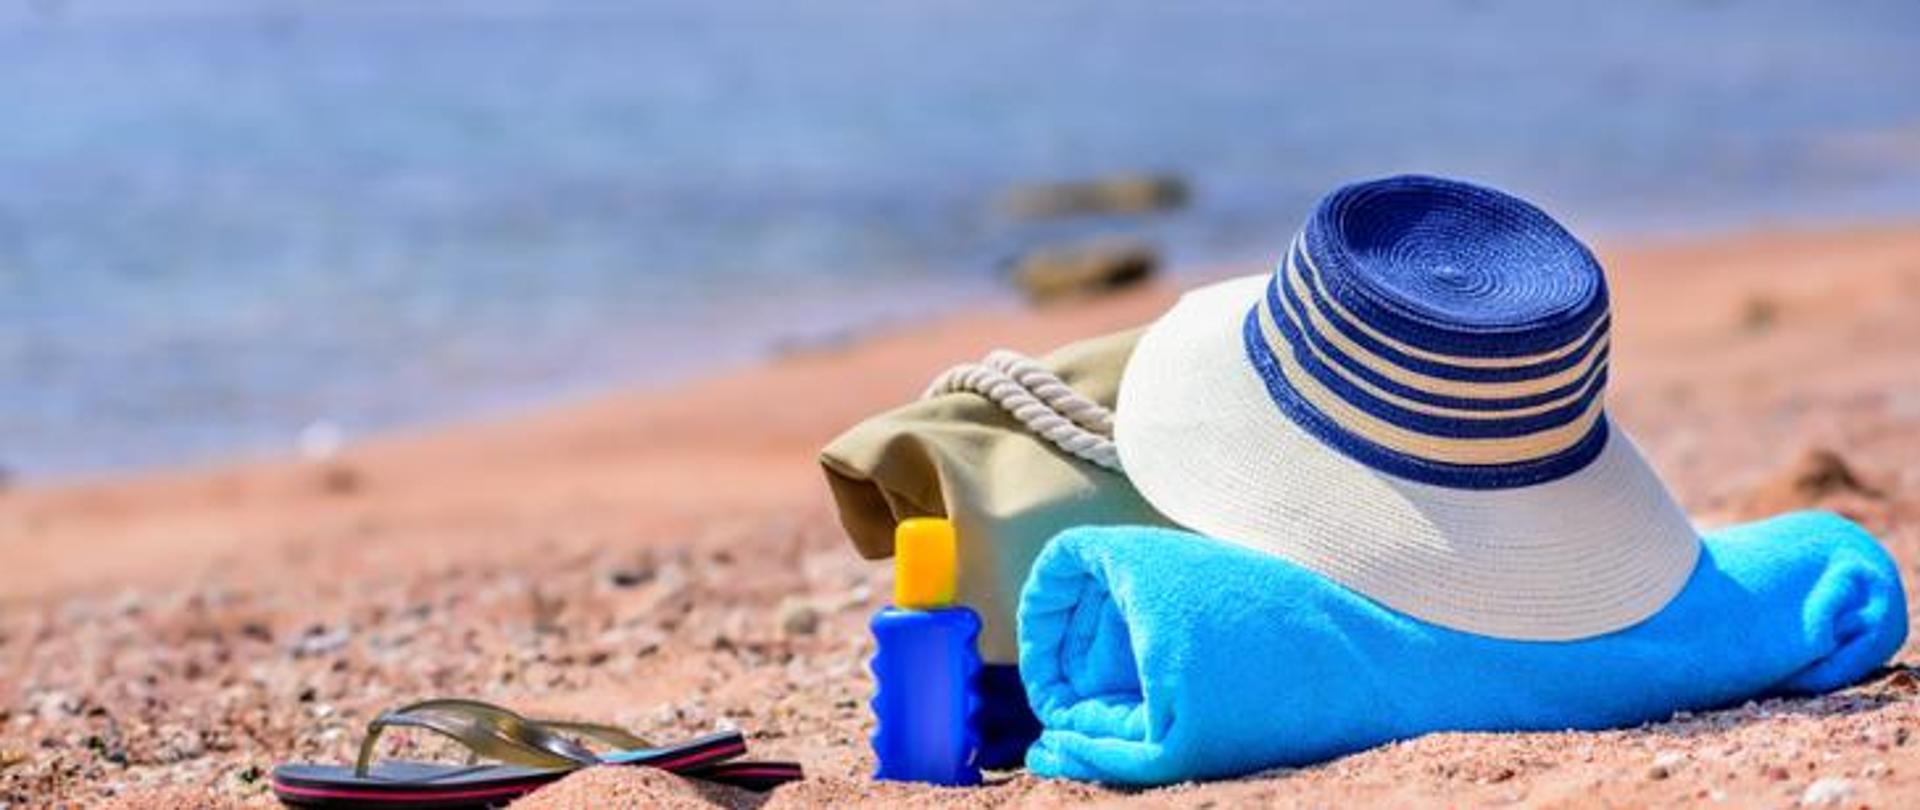 Na plaży leżą niebieski ręcznik, materiałowa torba. Ma nich leży słomkowy kapelusz, a obok widać klapki i olejek.